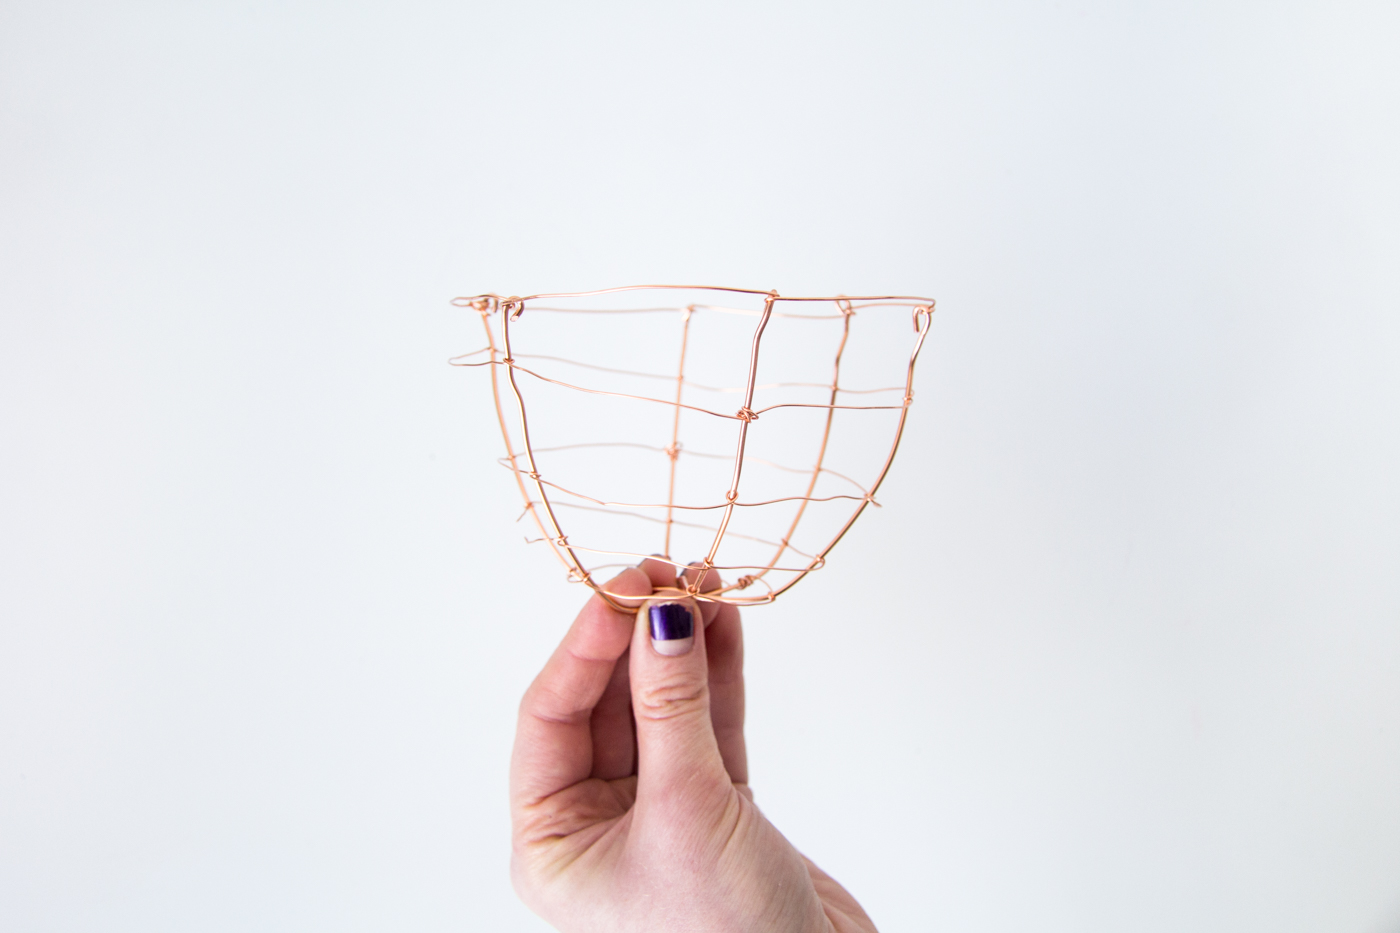 DIY Copper Wire Easter Egg Baskets | @fallfordiy Step 7b